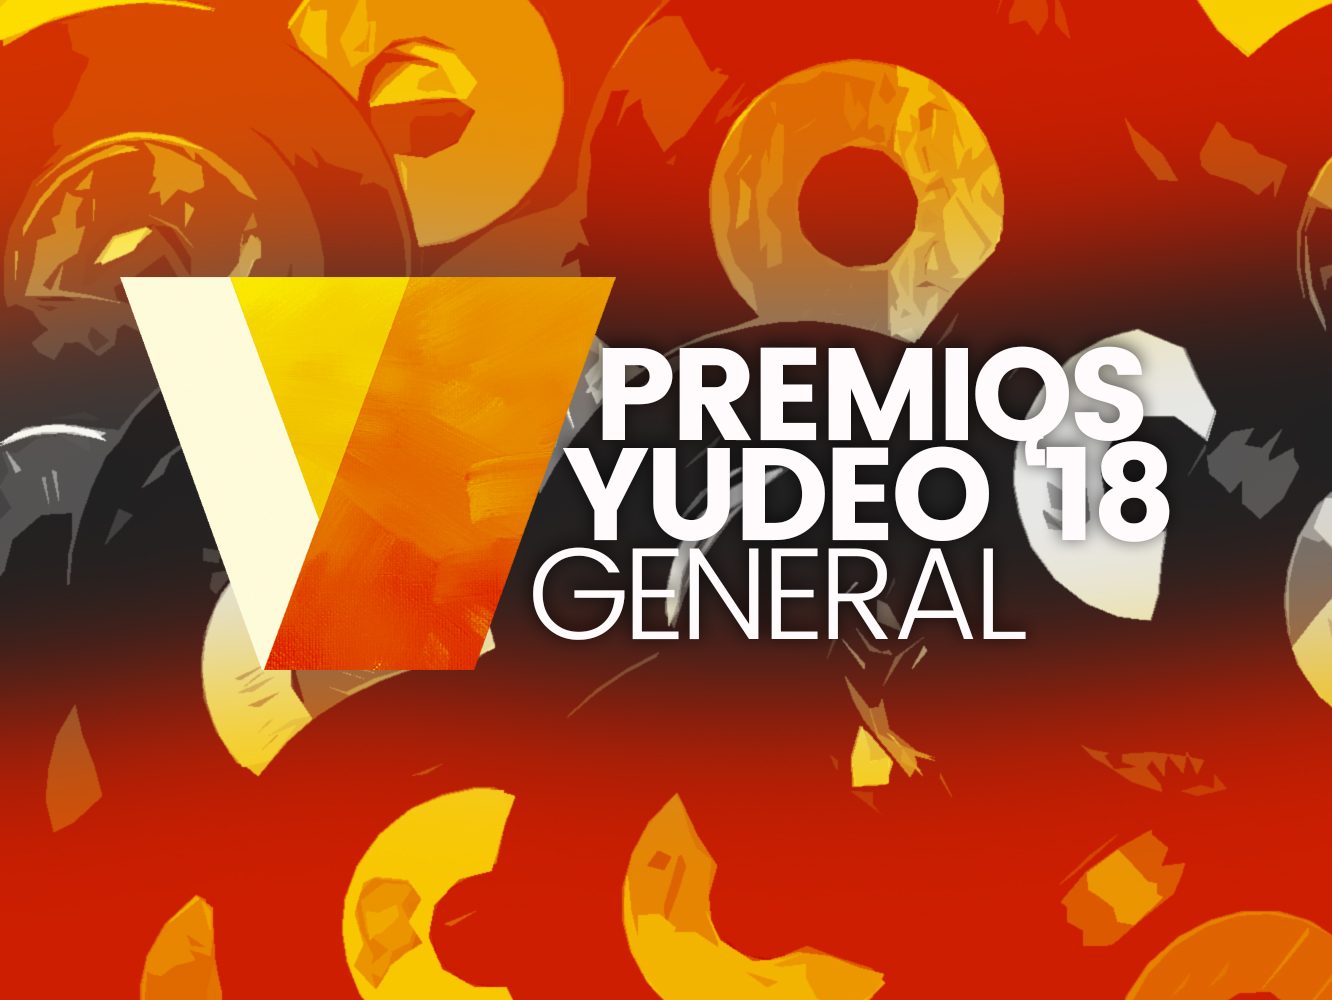  Premios Yudeo 2018 | Categorías generales